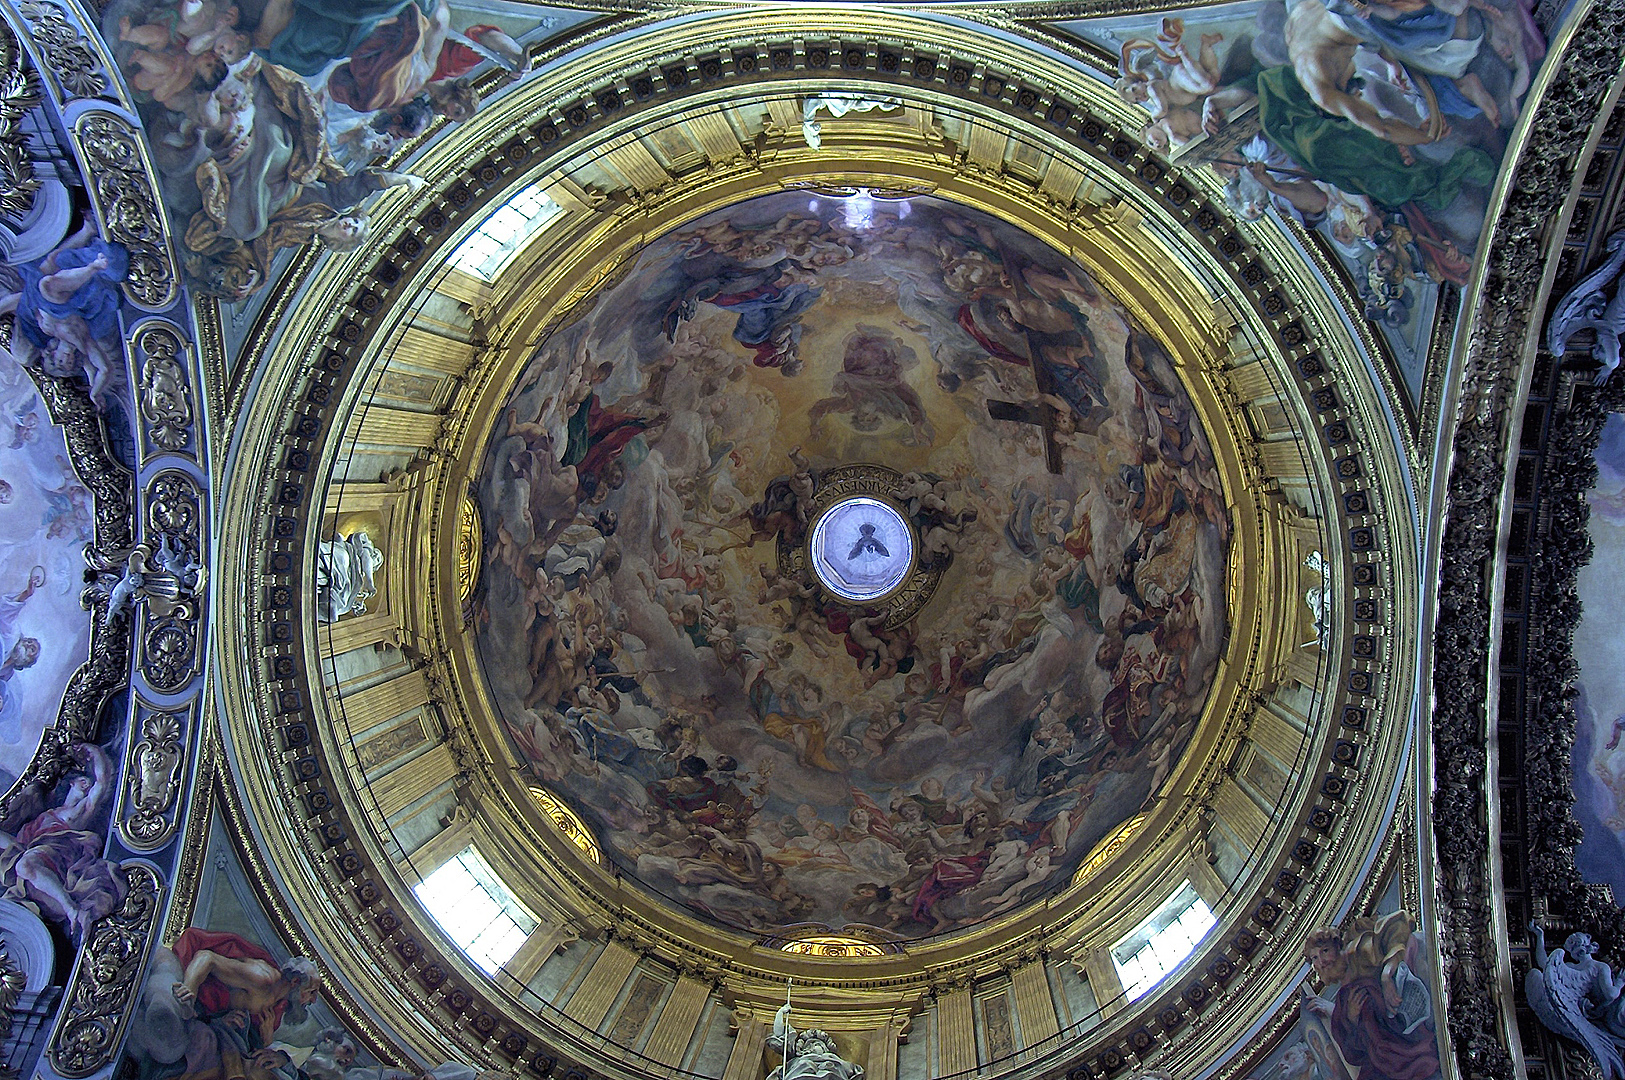 Il Ges, interieur (Rome), Il Ges, interior